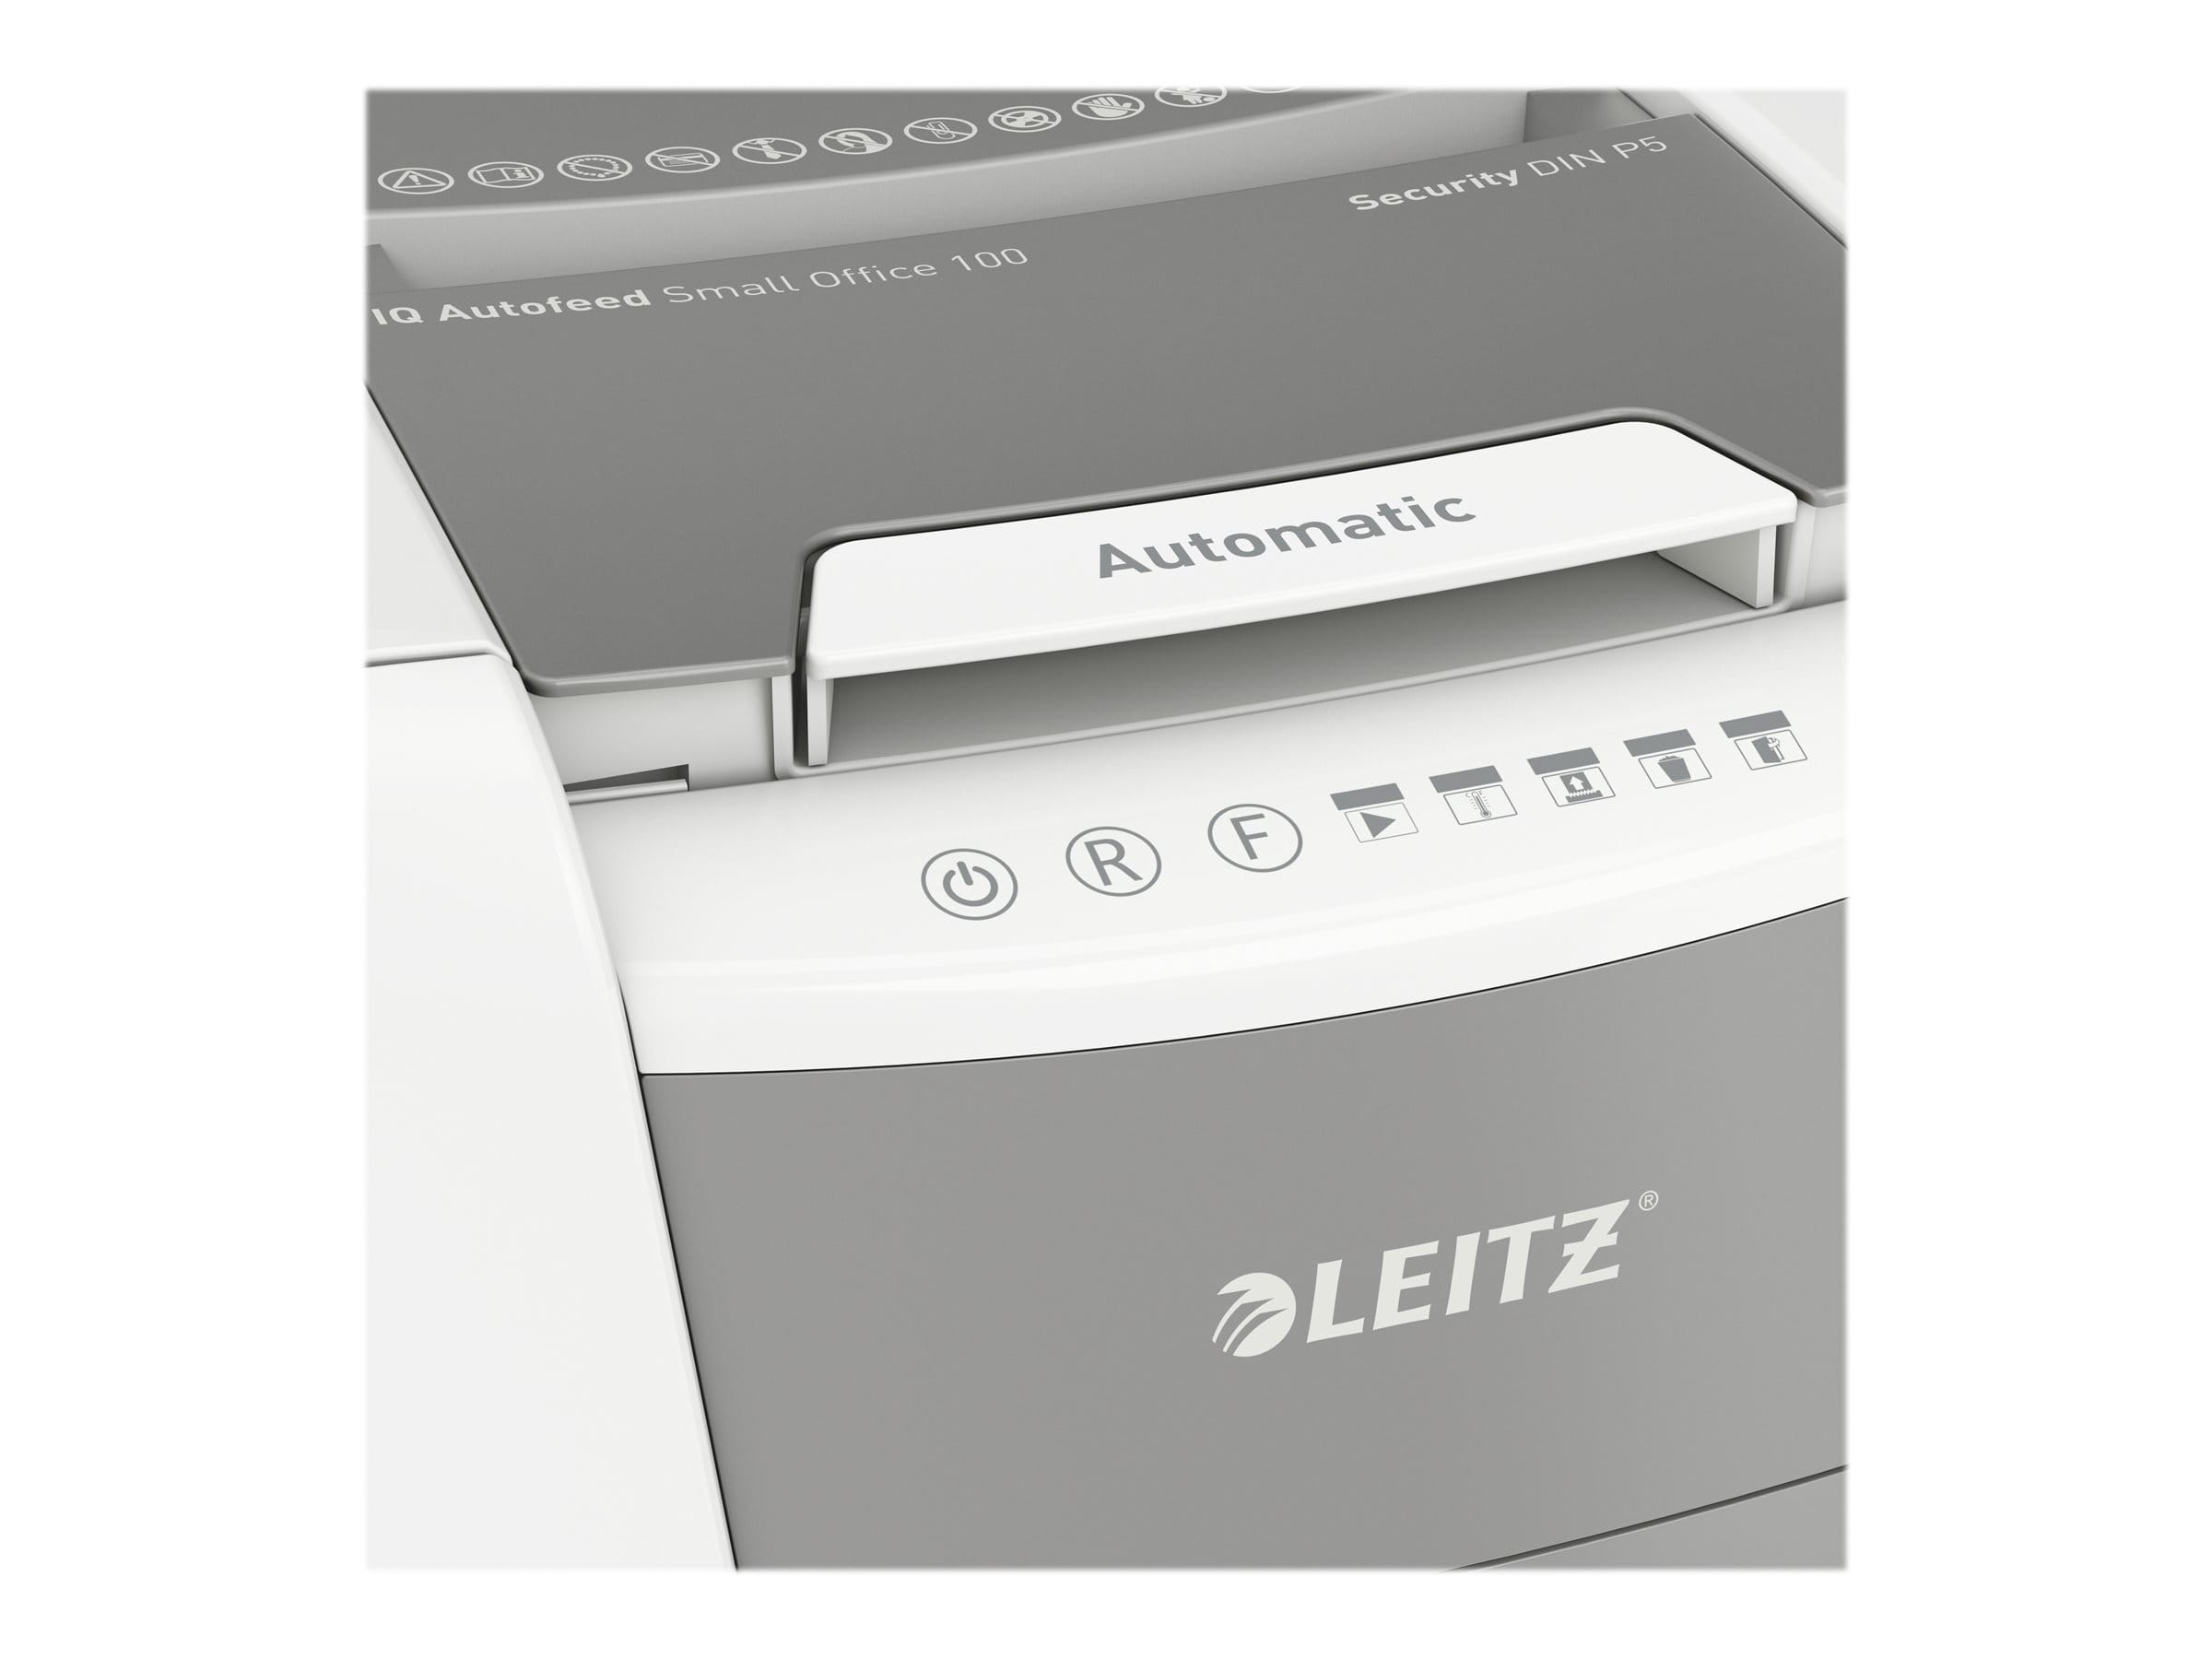 Esselte Leitz IQ AutoFeed Small Office 100 P5 - Vorzerkleinerer